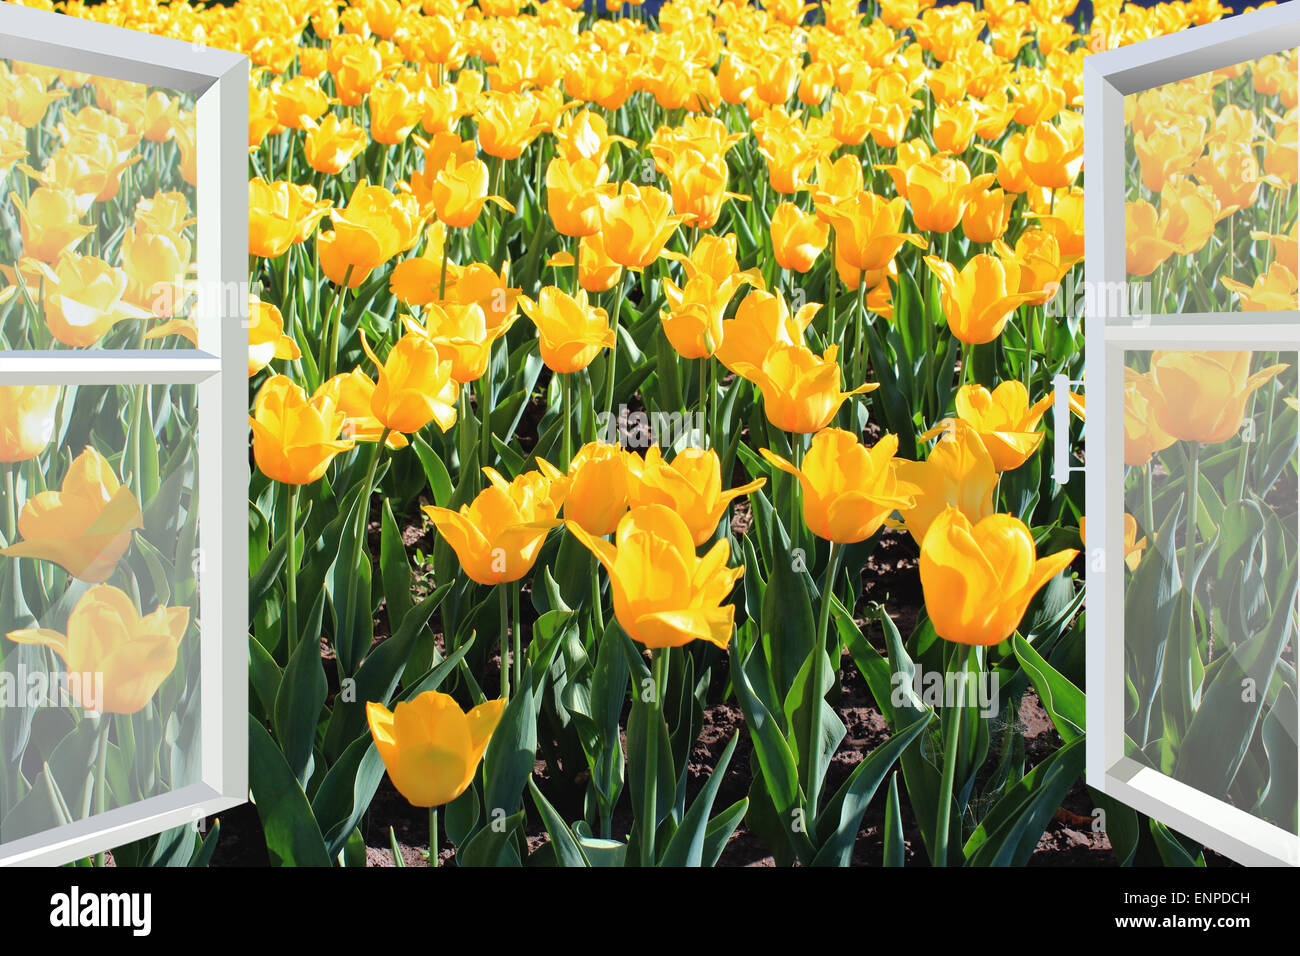 Fenêtre ouverte pour le champ de tulipes jaune printemps Banque D'Images